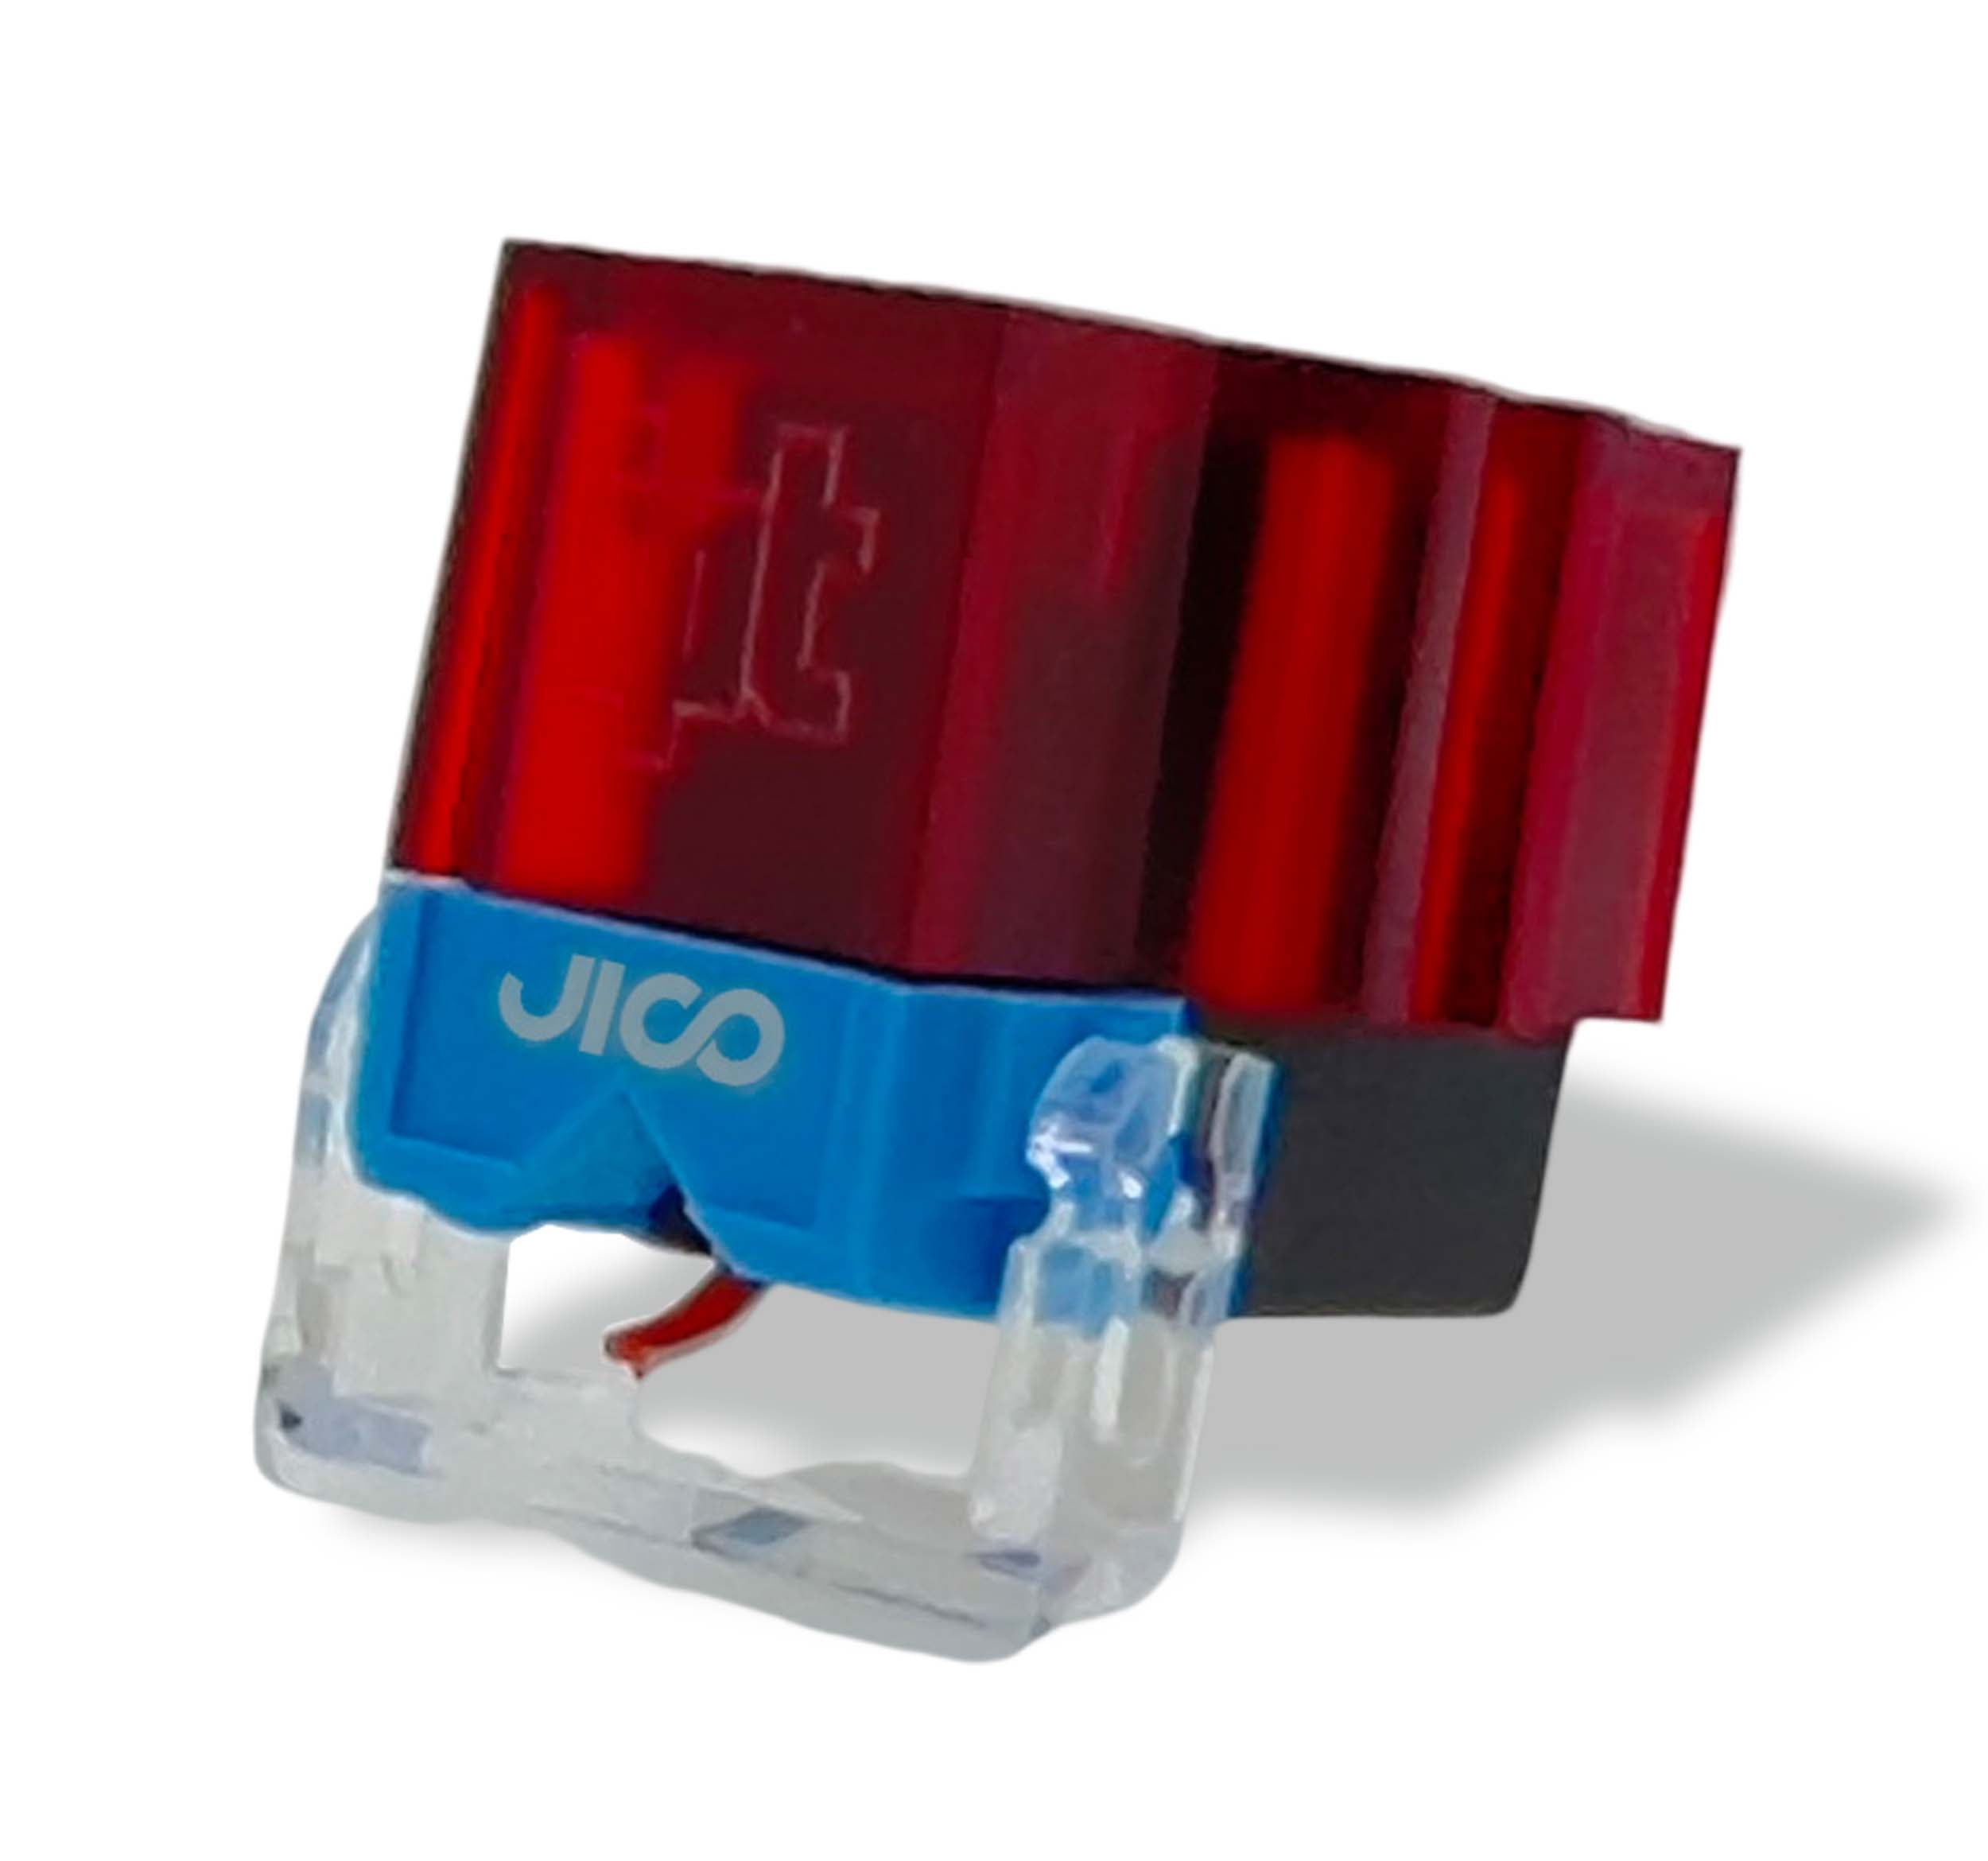 Jico J-AAC0636, Impact SD Cartridge Jico